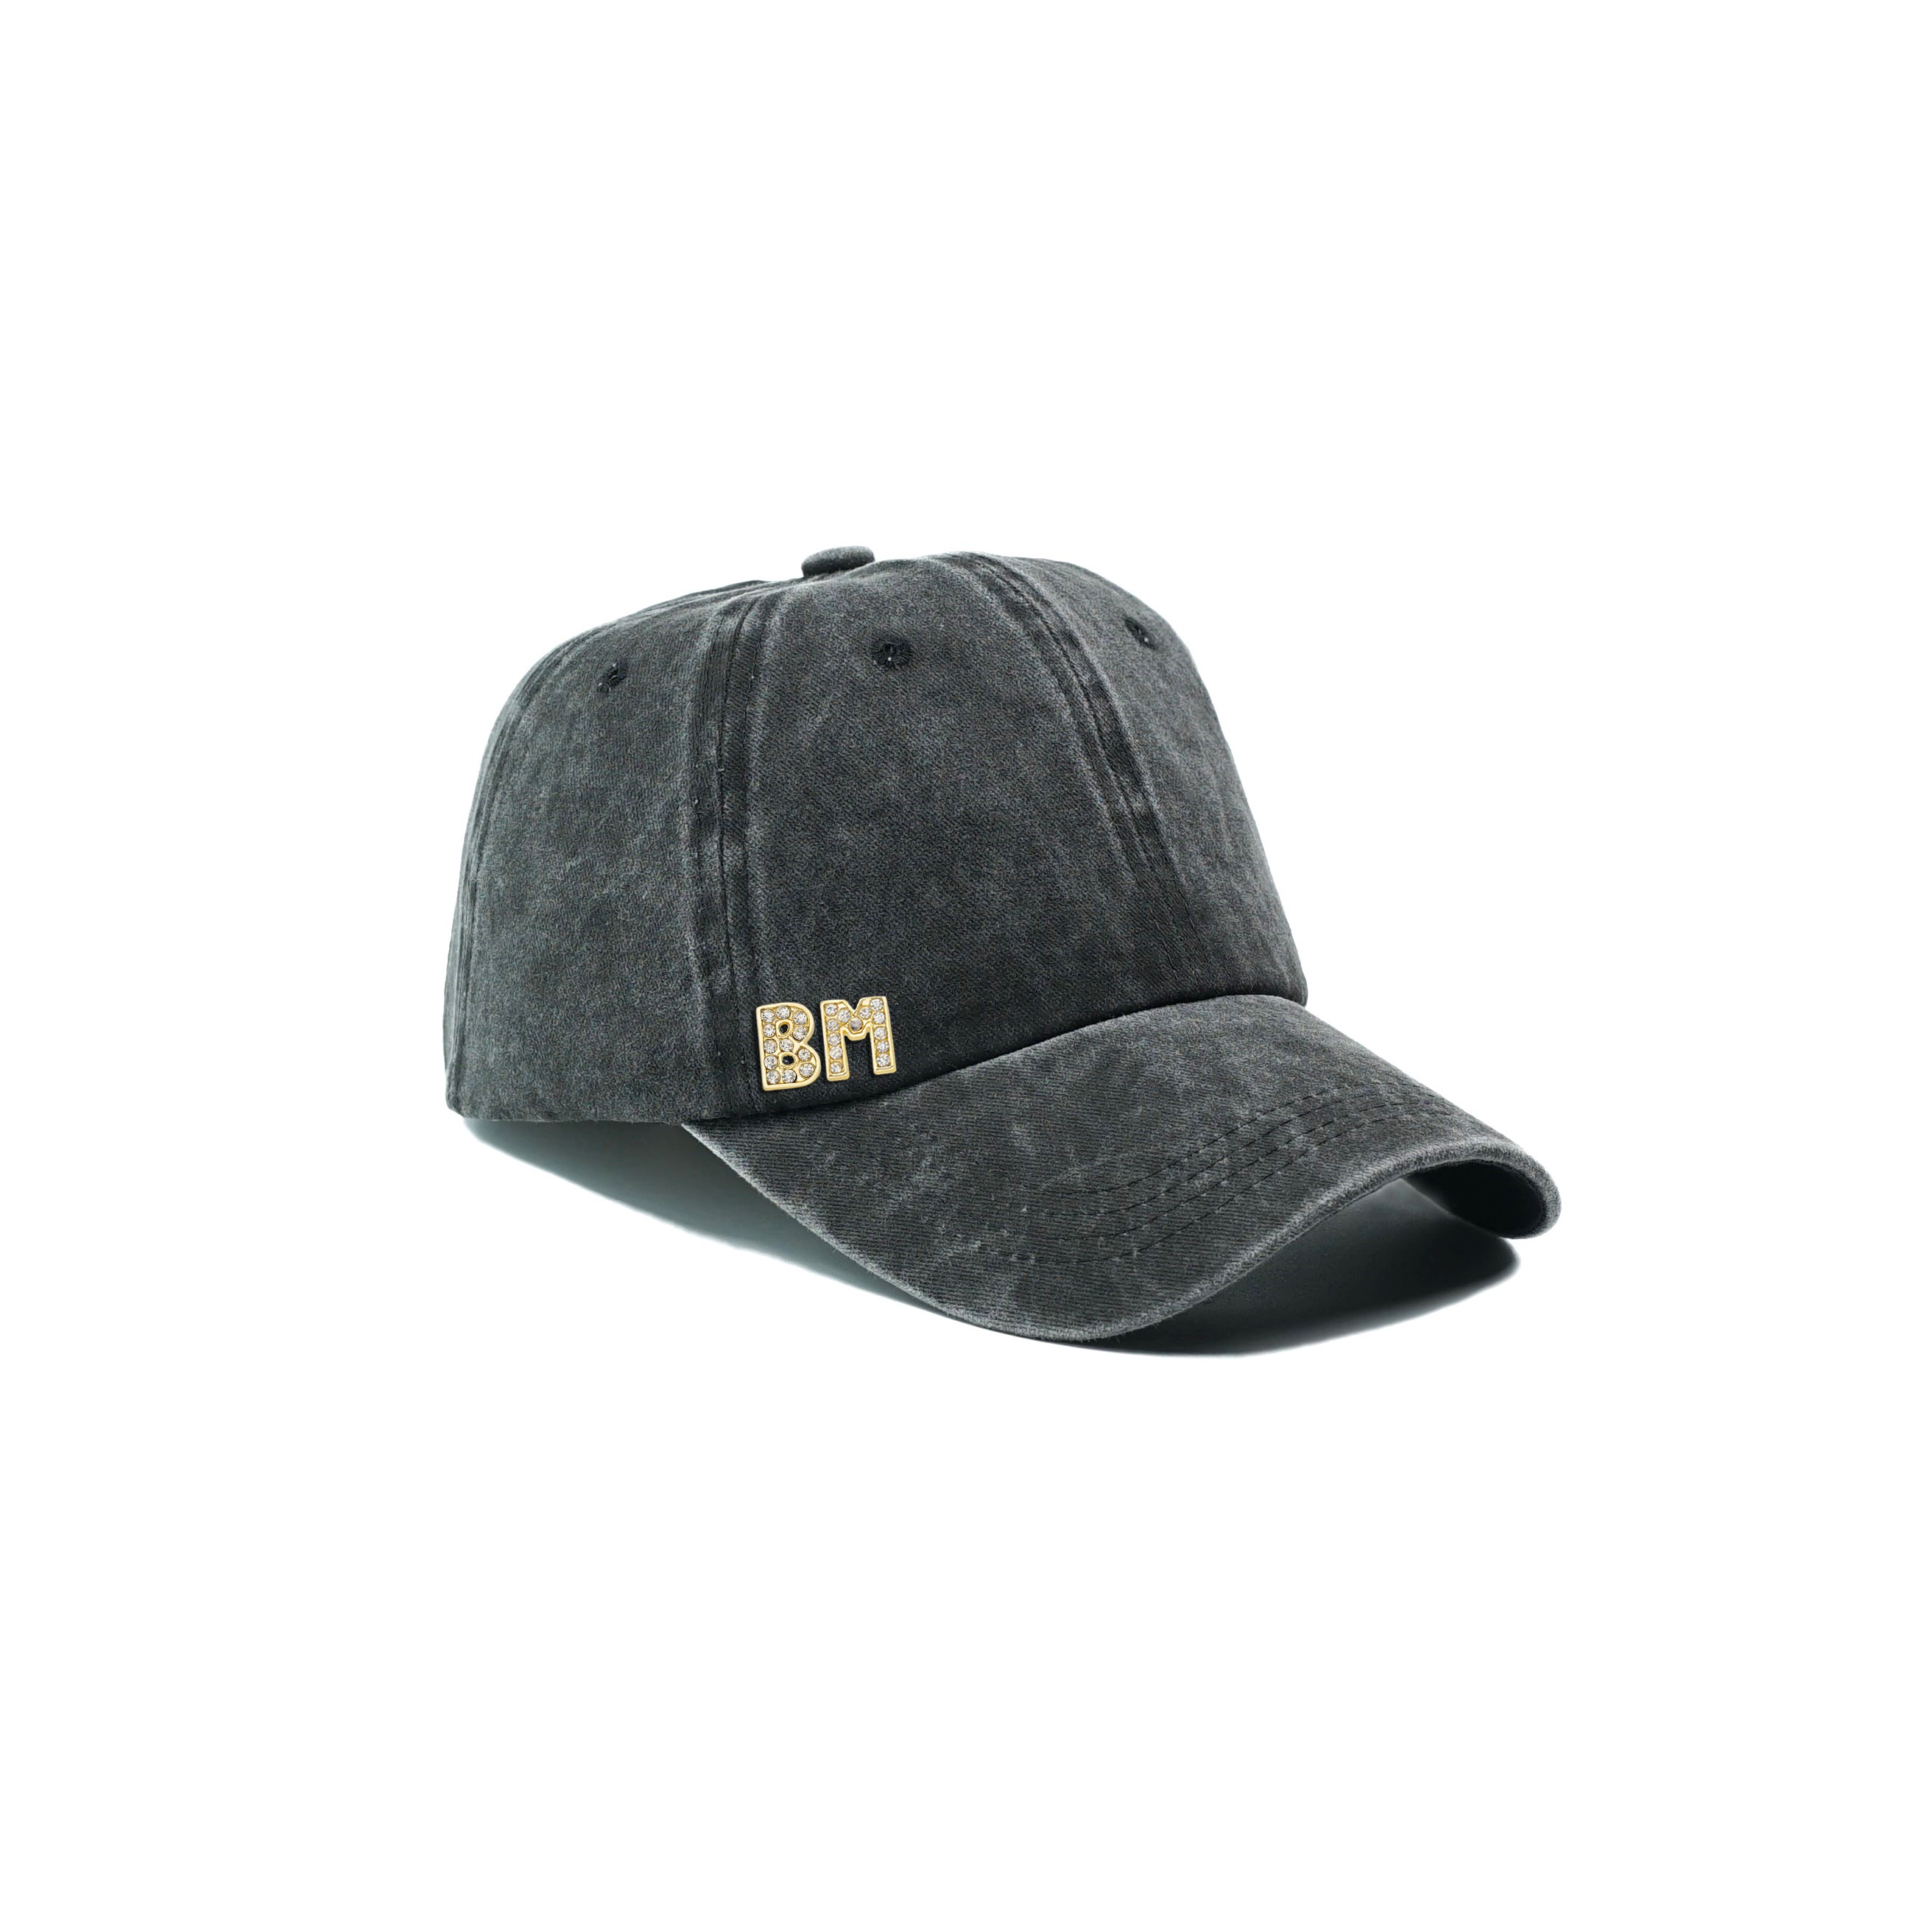 Twingold Kişiye Özel Yıkamalı Kep Şapka - Siyah